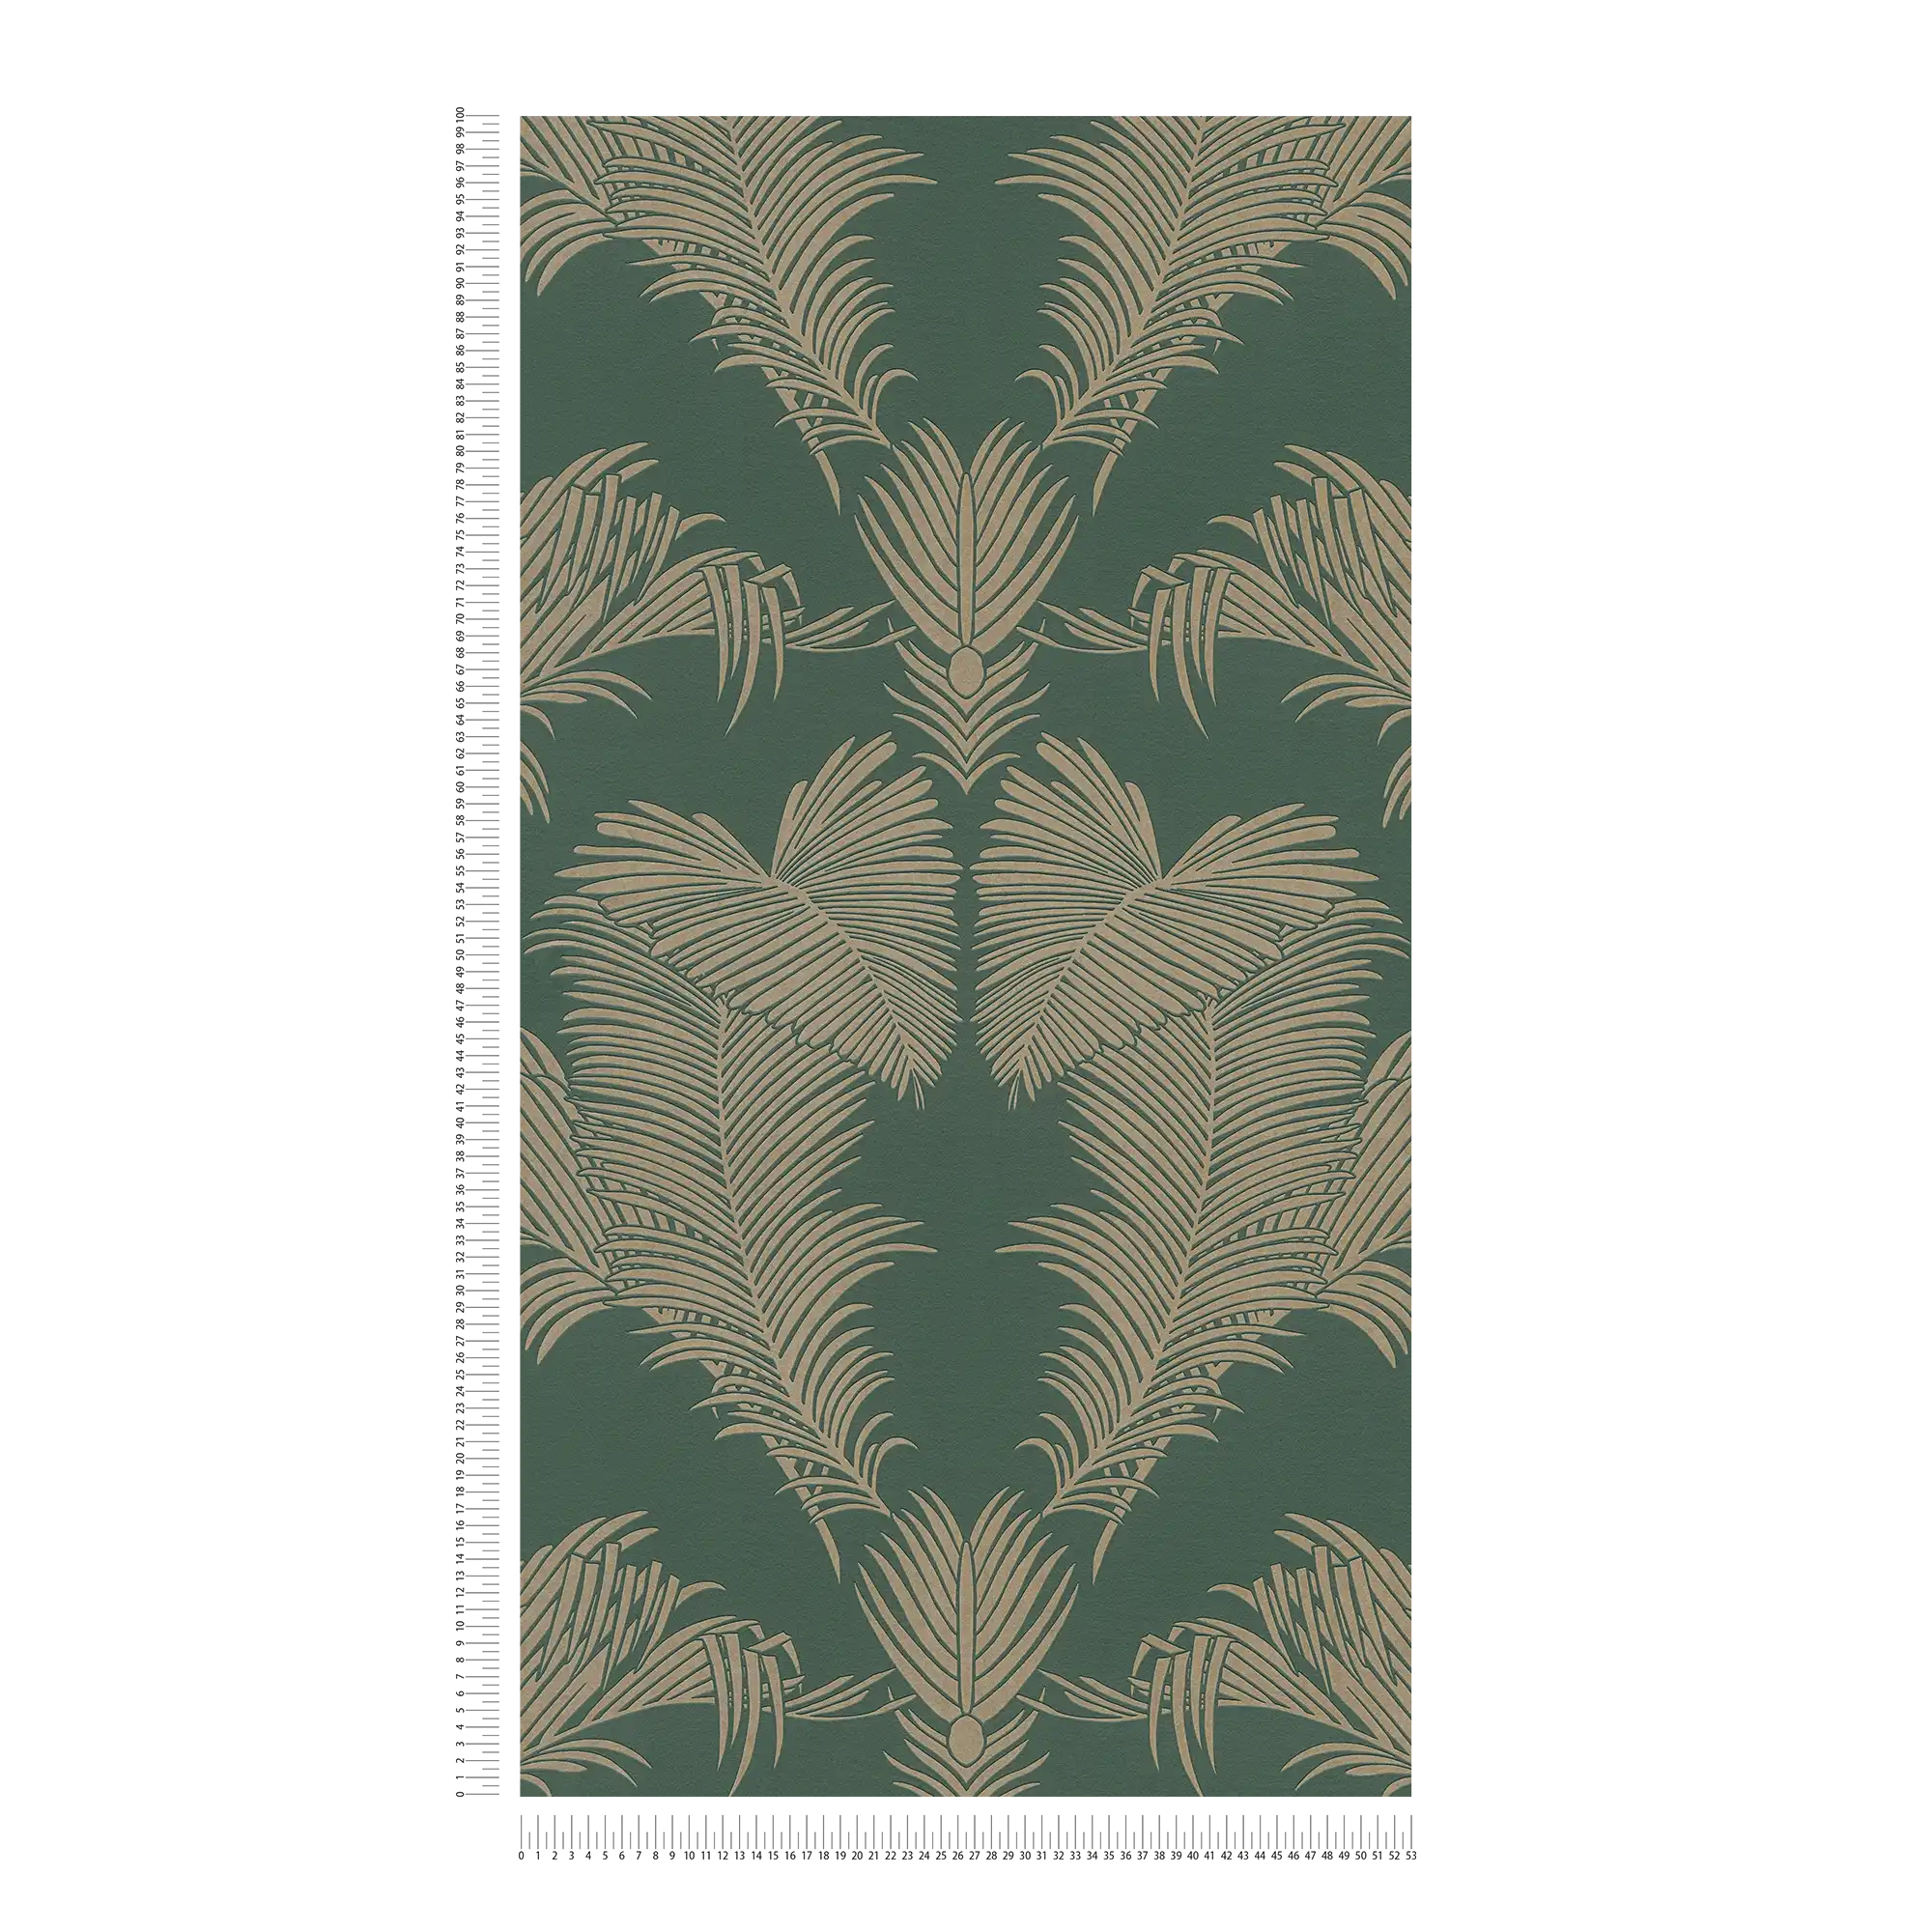             Non-woven wallpaper fir green & gold with palm leaf motif - green, metallic
        